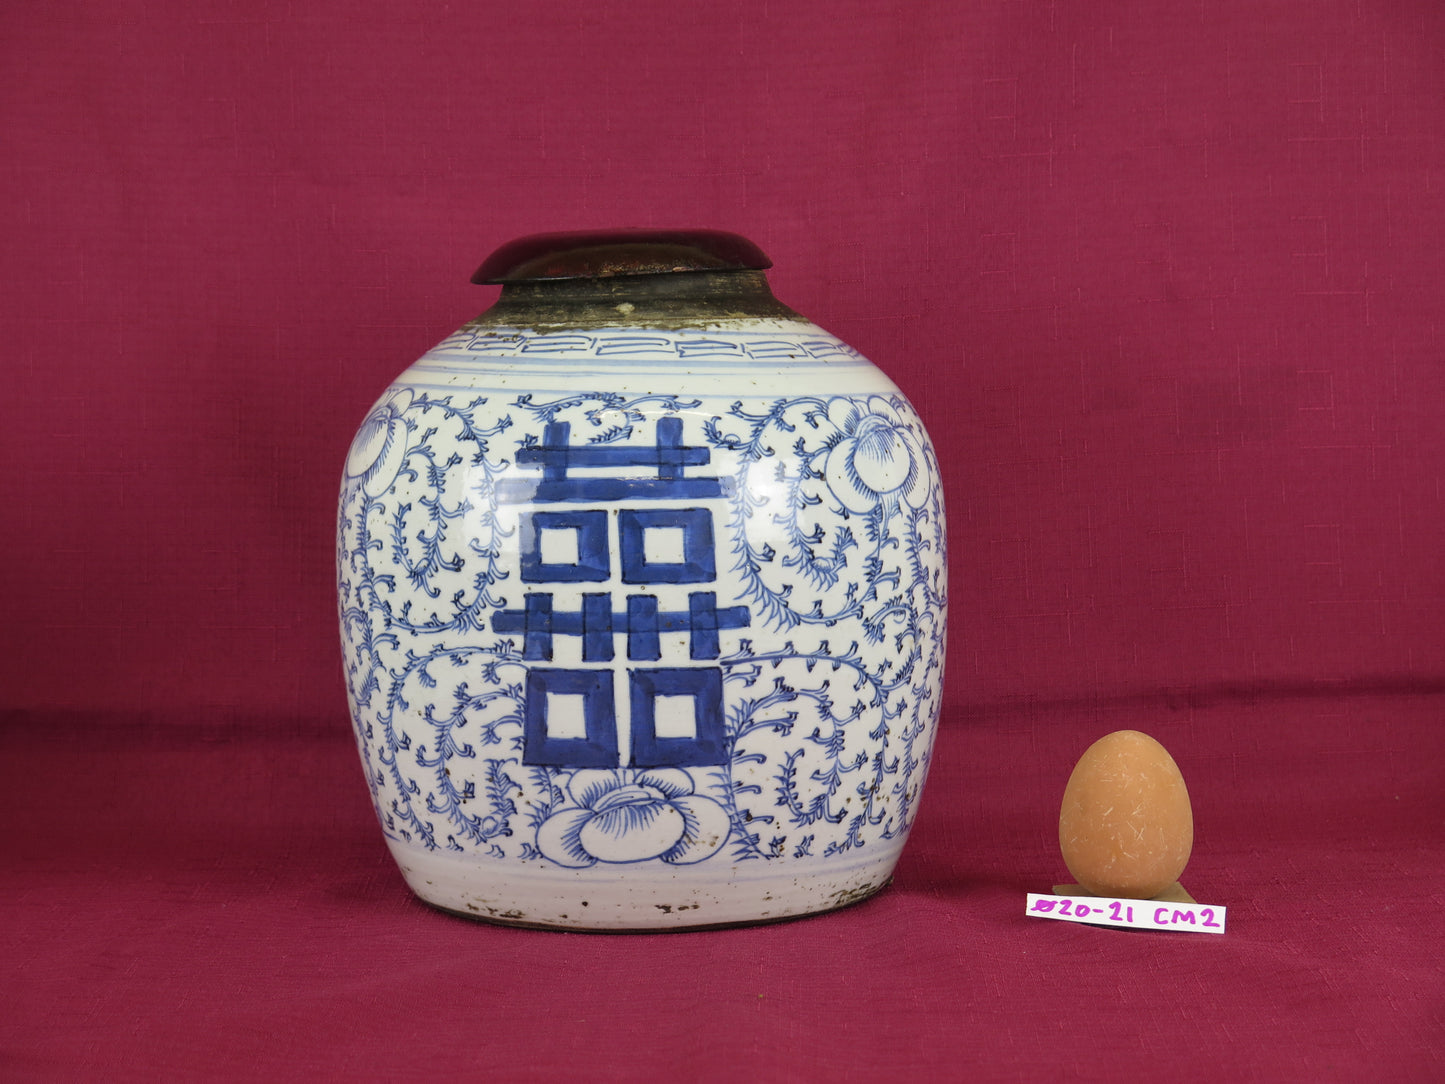 Vaso antico cina ceramica bianco blu simbolo felicita' sposi matrimonio CM2